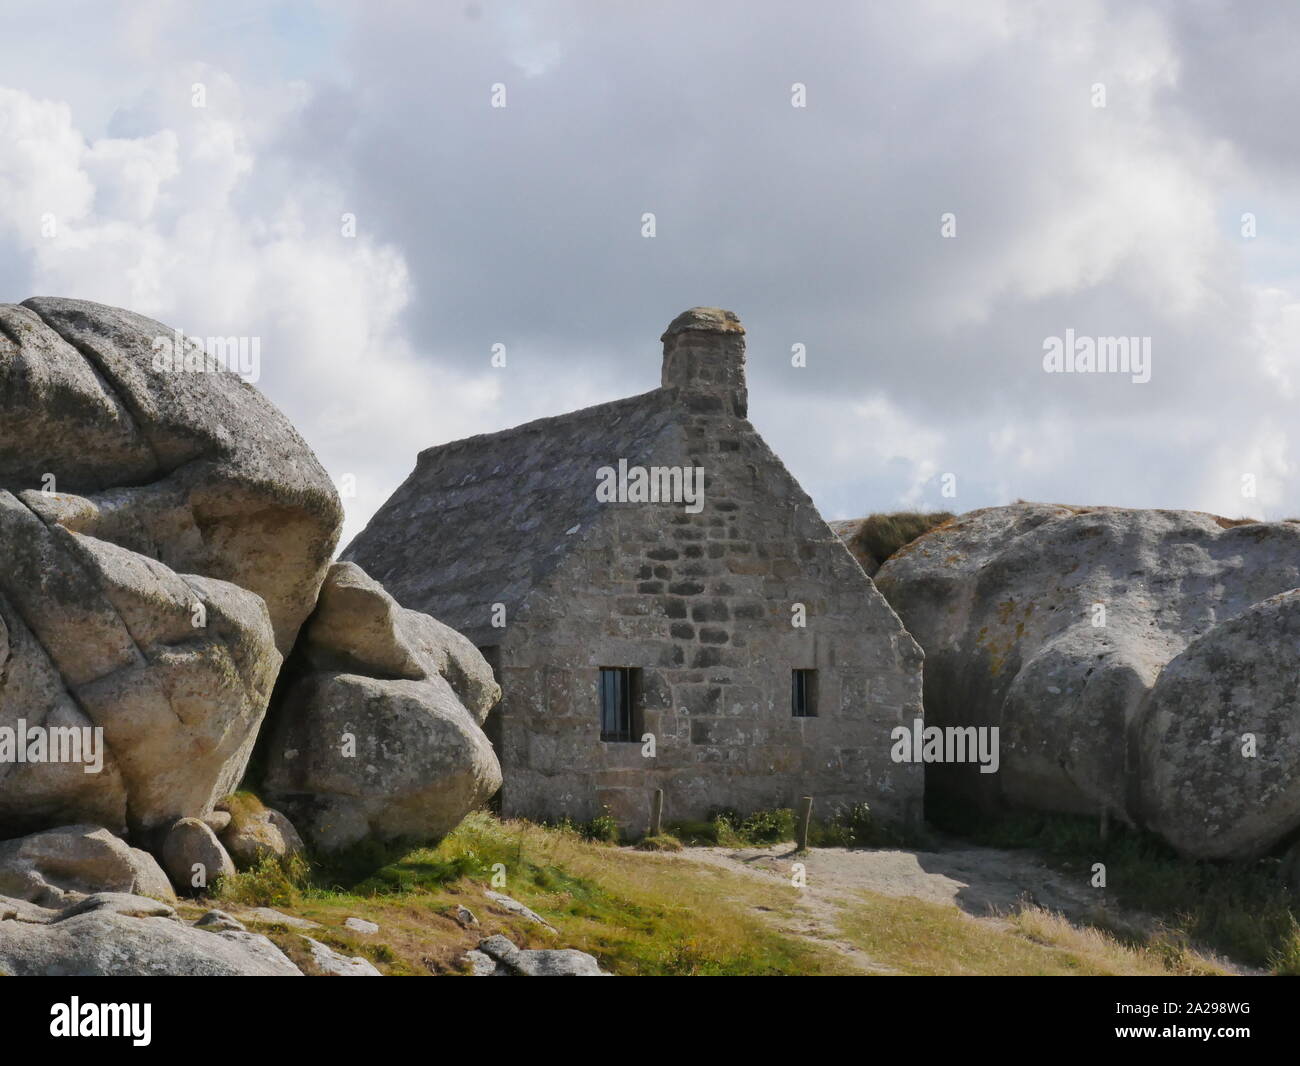 La Maison des douaniers de meneham kerlouan ,bretagne , maison bretonne derrière les Géants comporta rochers en granit Foto Stock